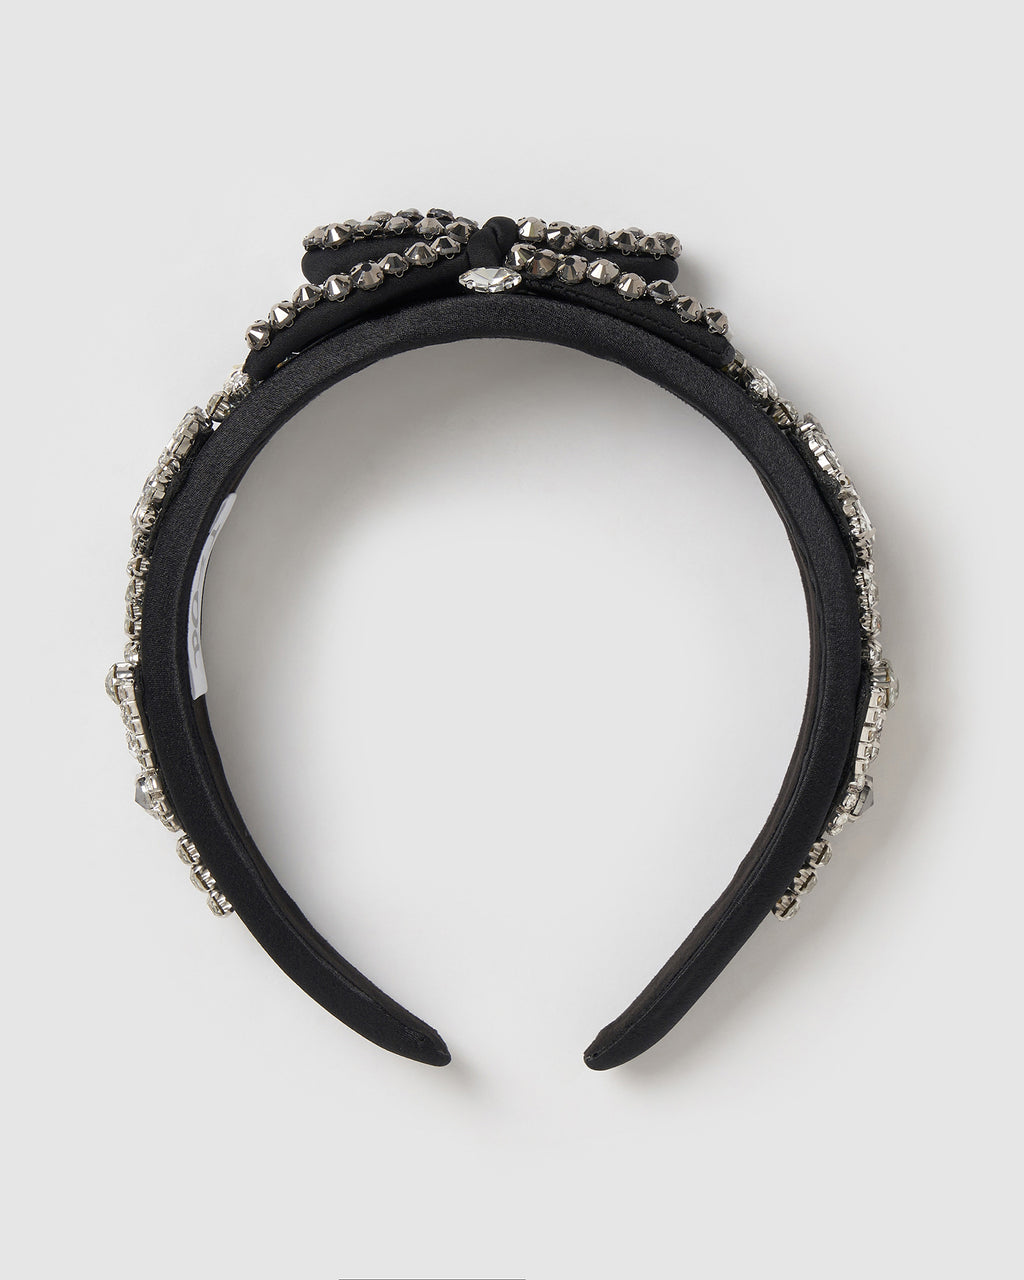 Izoa Emma Headband Black/Silver